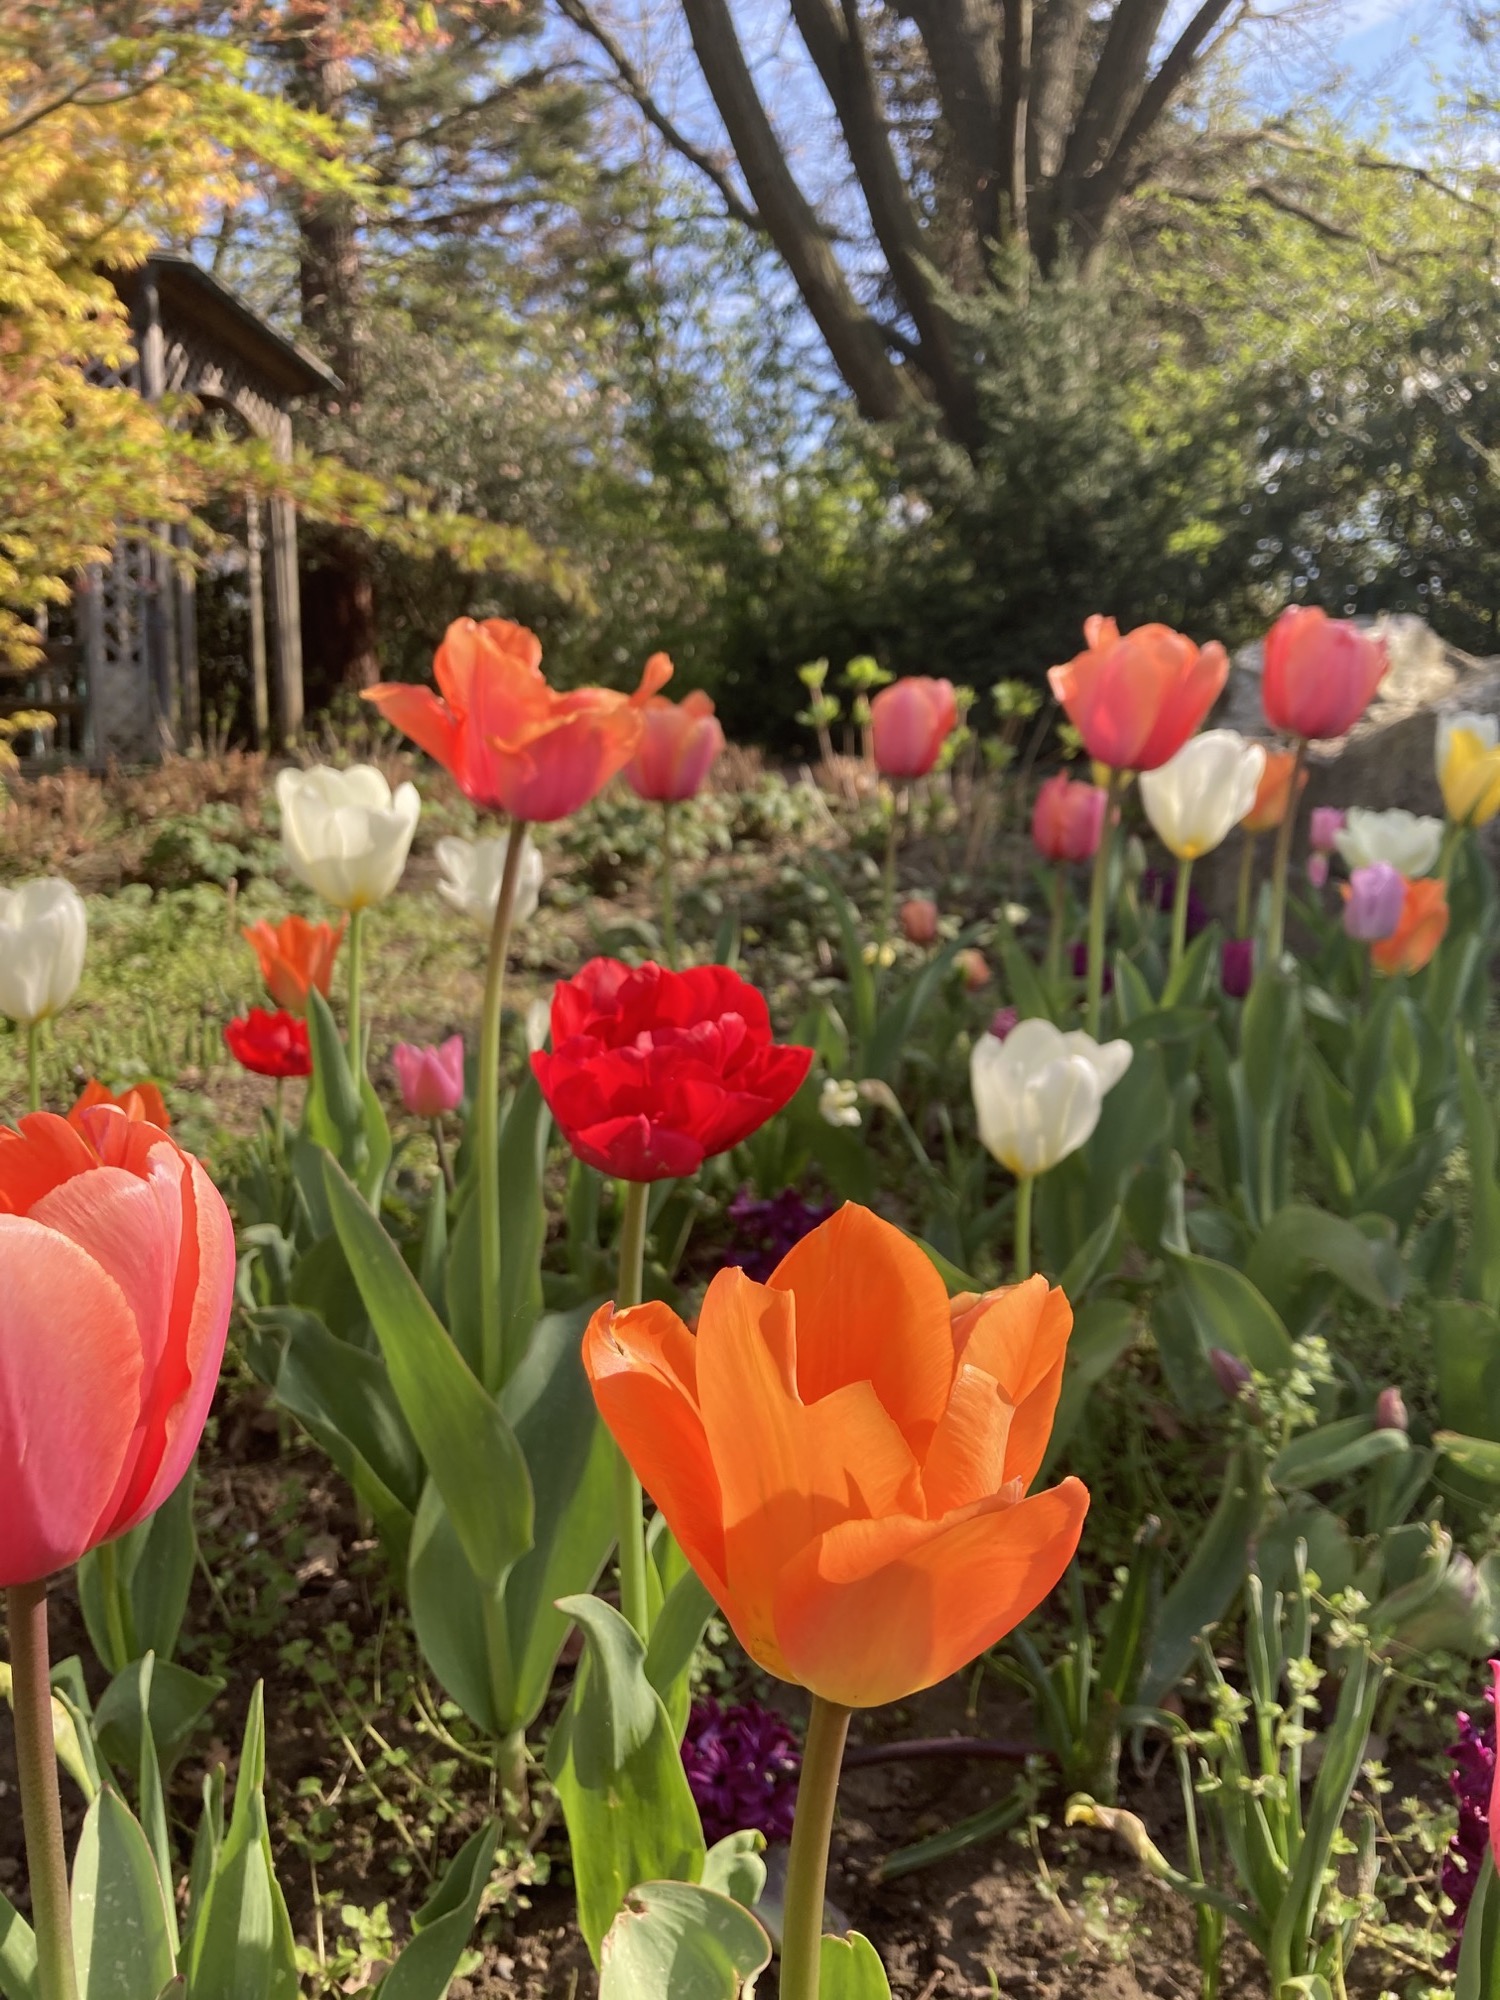 Tulpen in unterschiedlichsten Frühlingsfarben, im Vordergrund eine orangefarbene Blüte, dahinter Tulpen in rot, rosa, violett, gelb und weiß